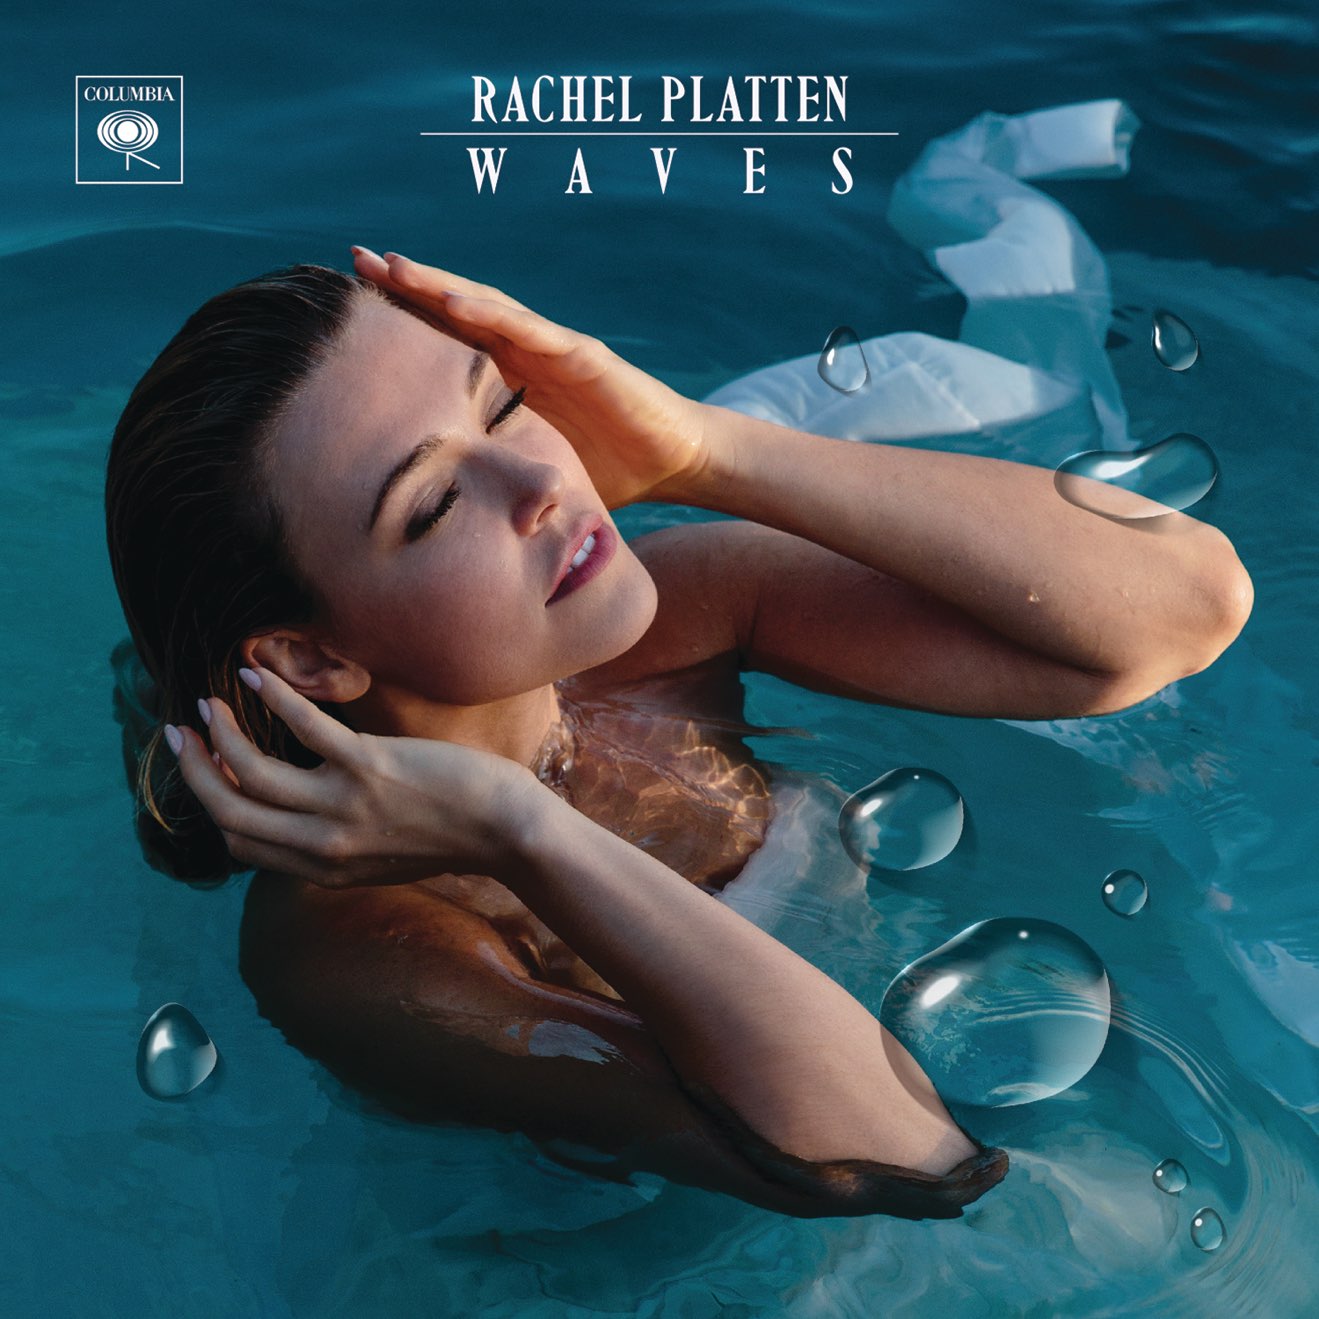 Rachel Platten – Waves (2017) [iTunes Match M4A]